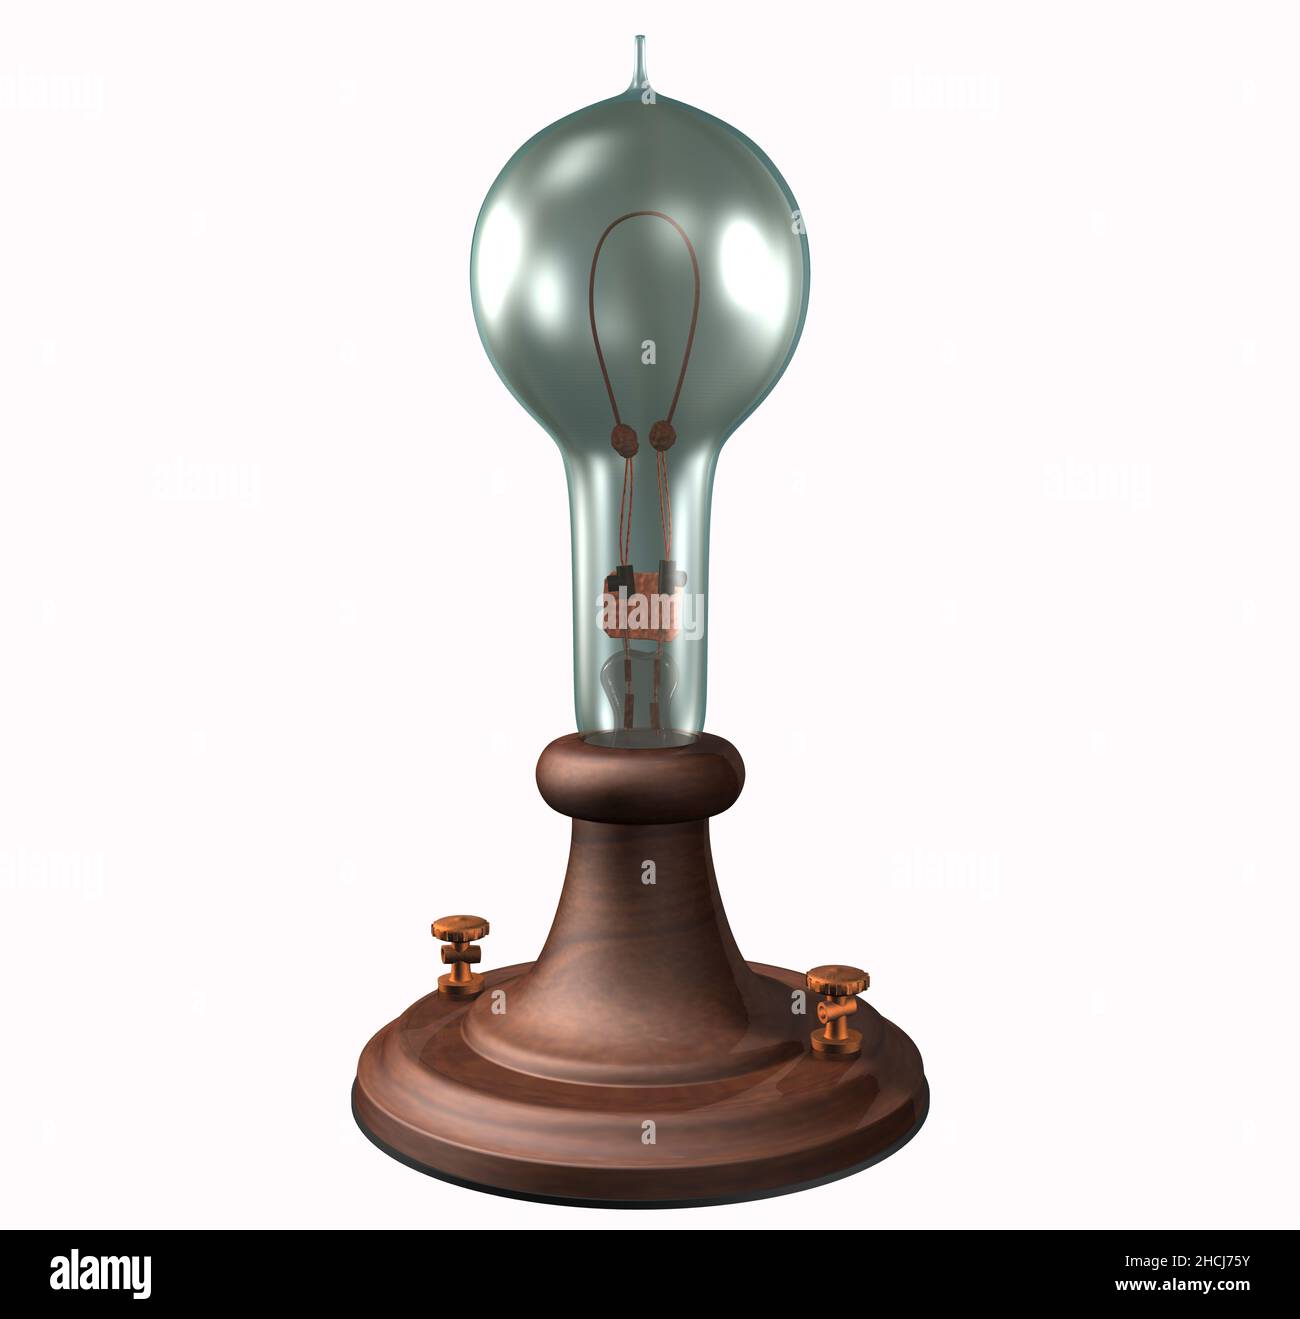 3D rappresentazione illustrazione della prima lampadina Edison, costruita nel 1879 e brevettata nel 1880. Foto Stock